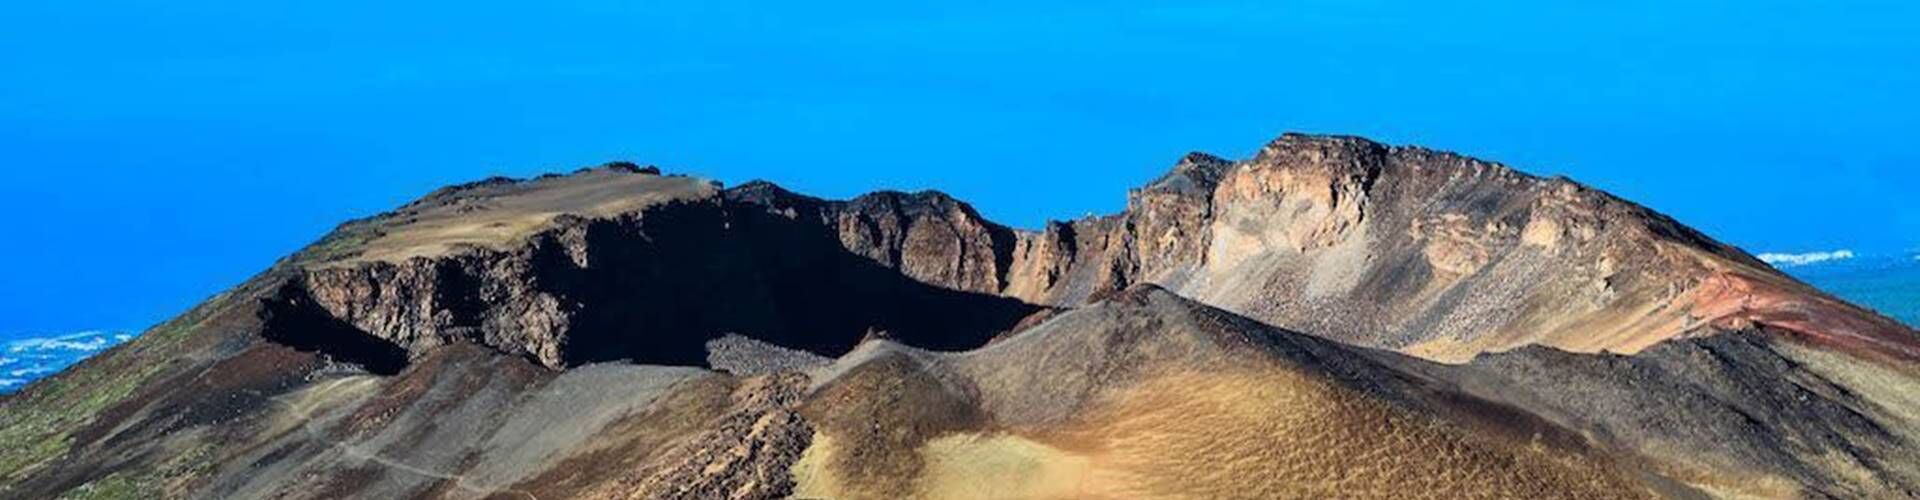 Mejor ruta para subir al Teide en coche